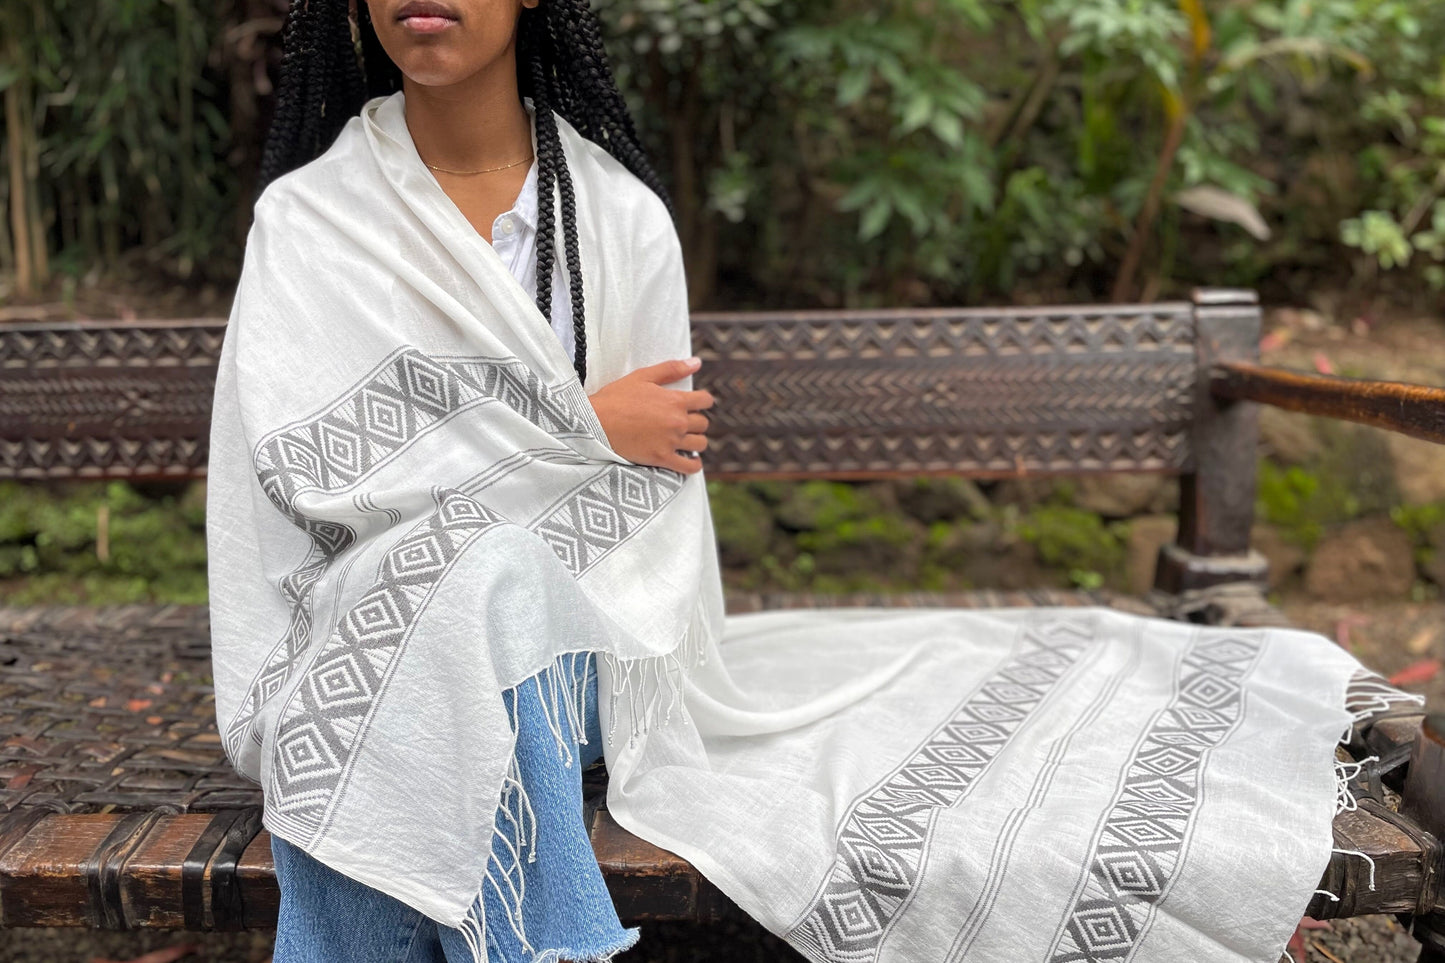 Queen Taitu shawl shawl sabahar 